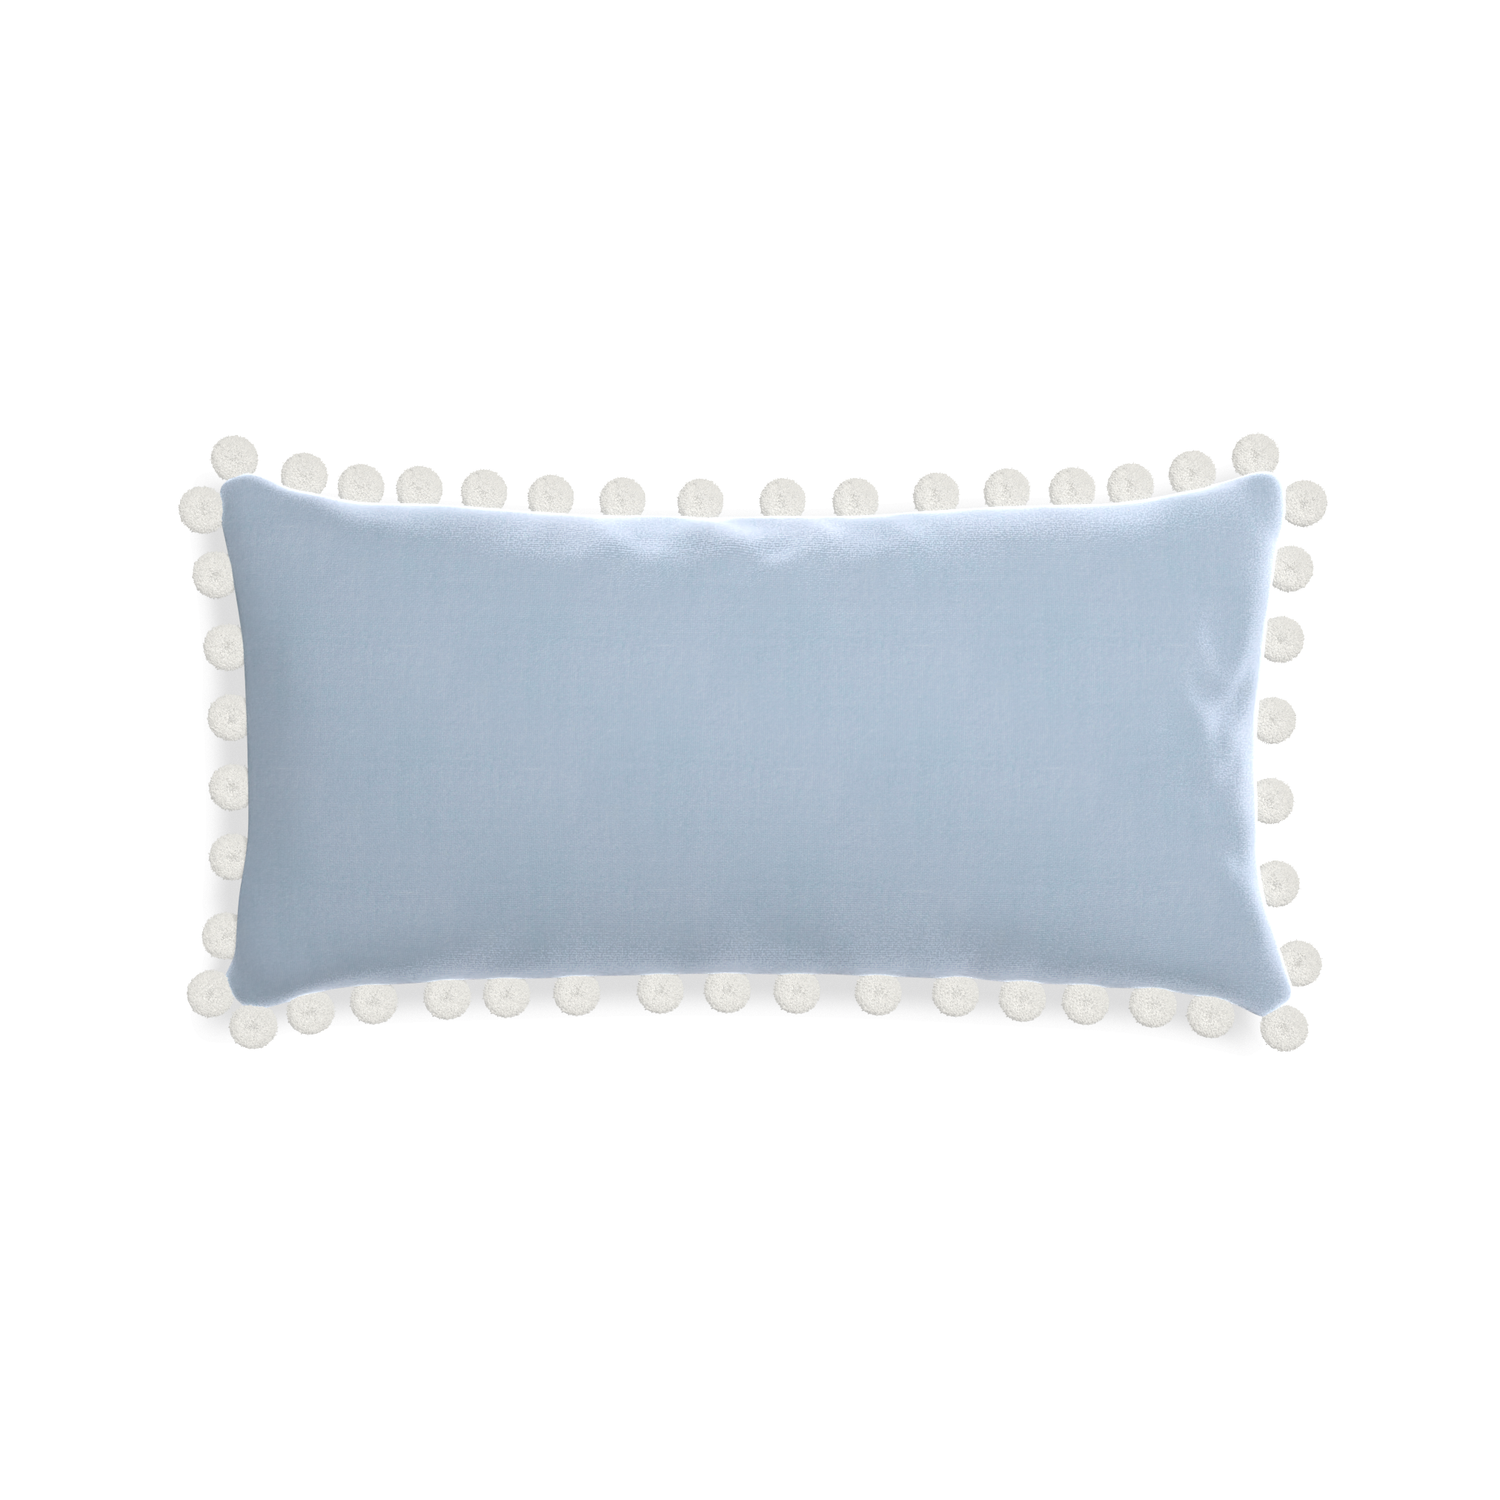 rectangle light blue velvet pillow with white pom poms 